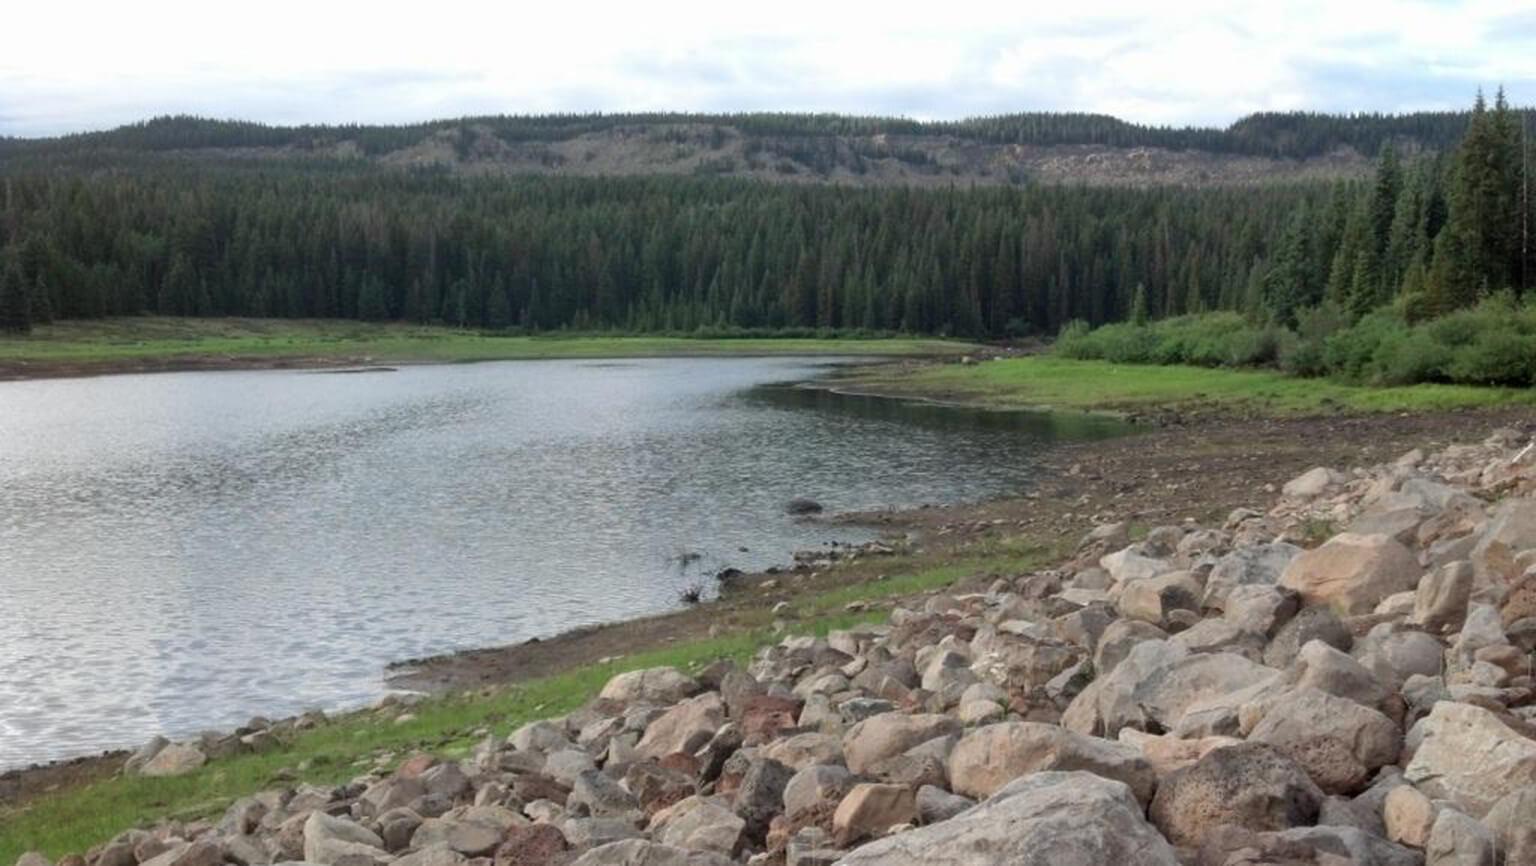 Bull Creek Ditch Company – Bull Creek Dam Repair and Vegetation Monitoring